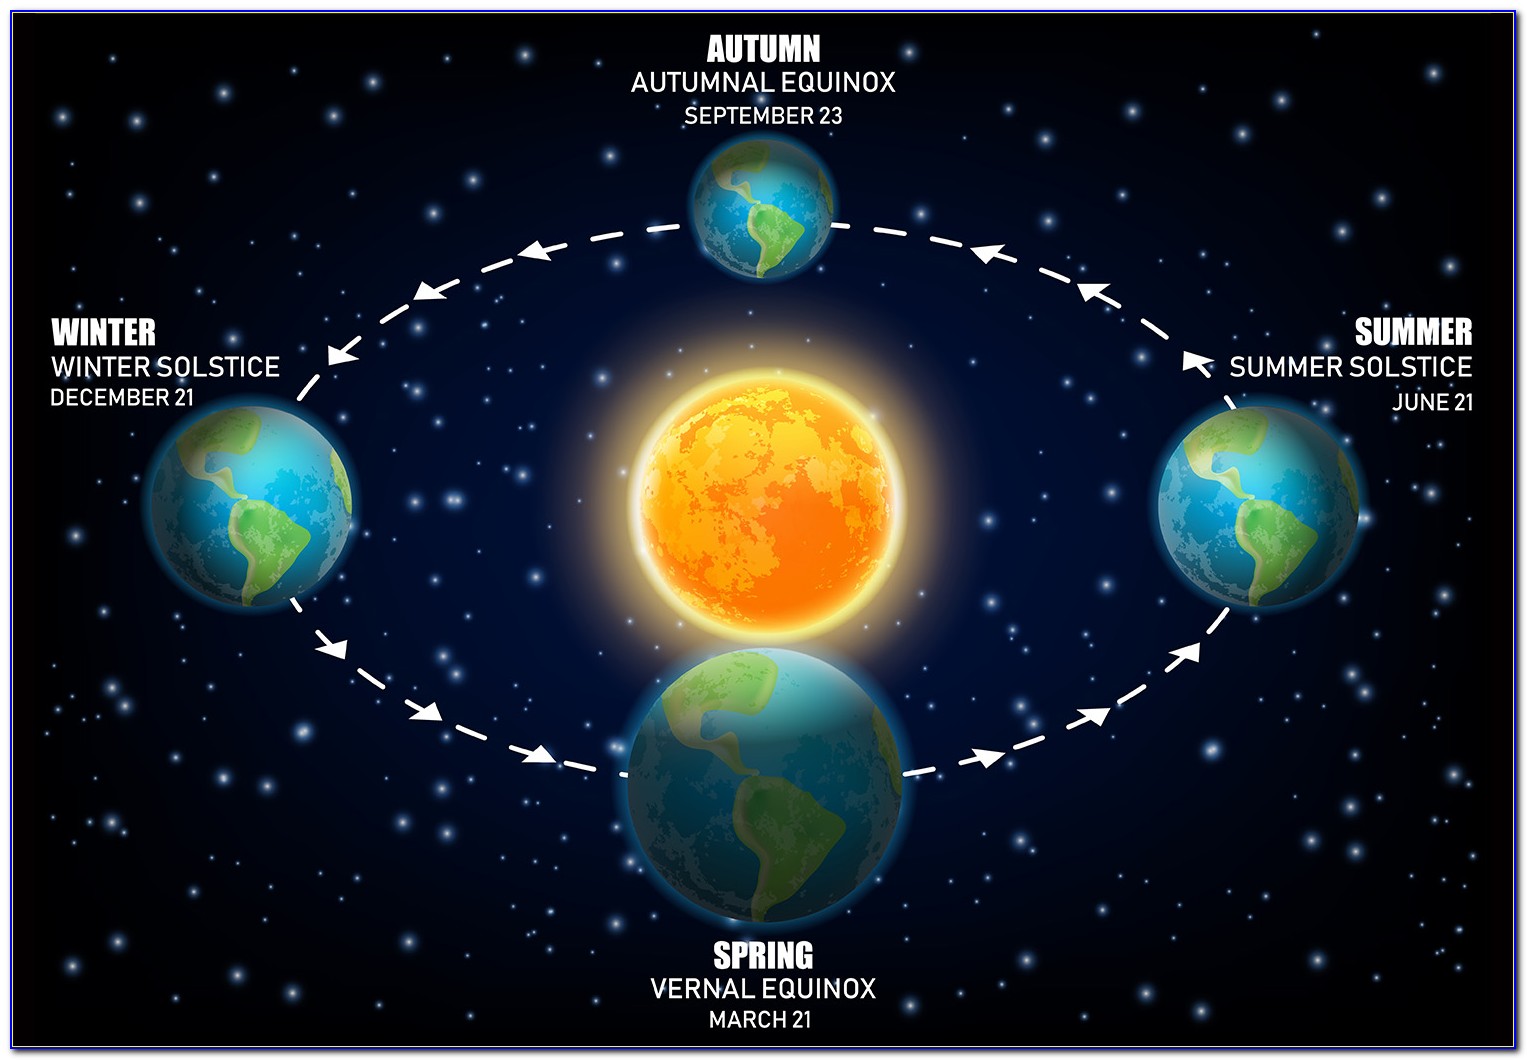 Equinox And Solstice Diagram